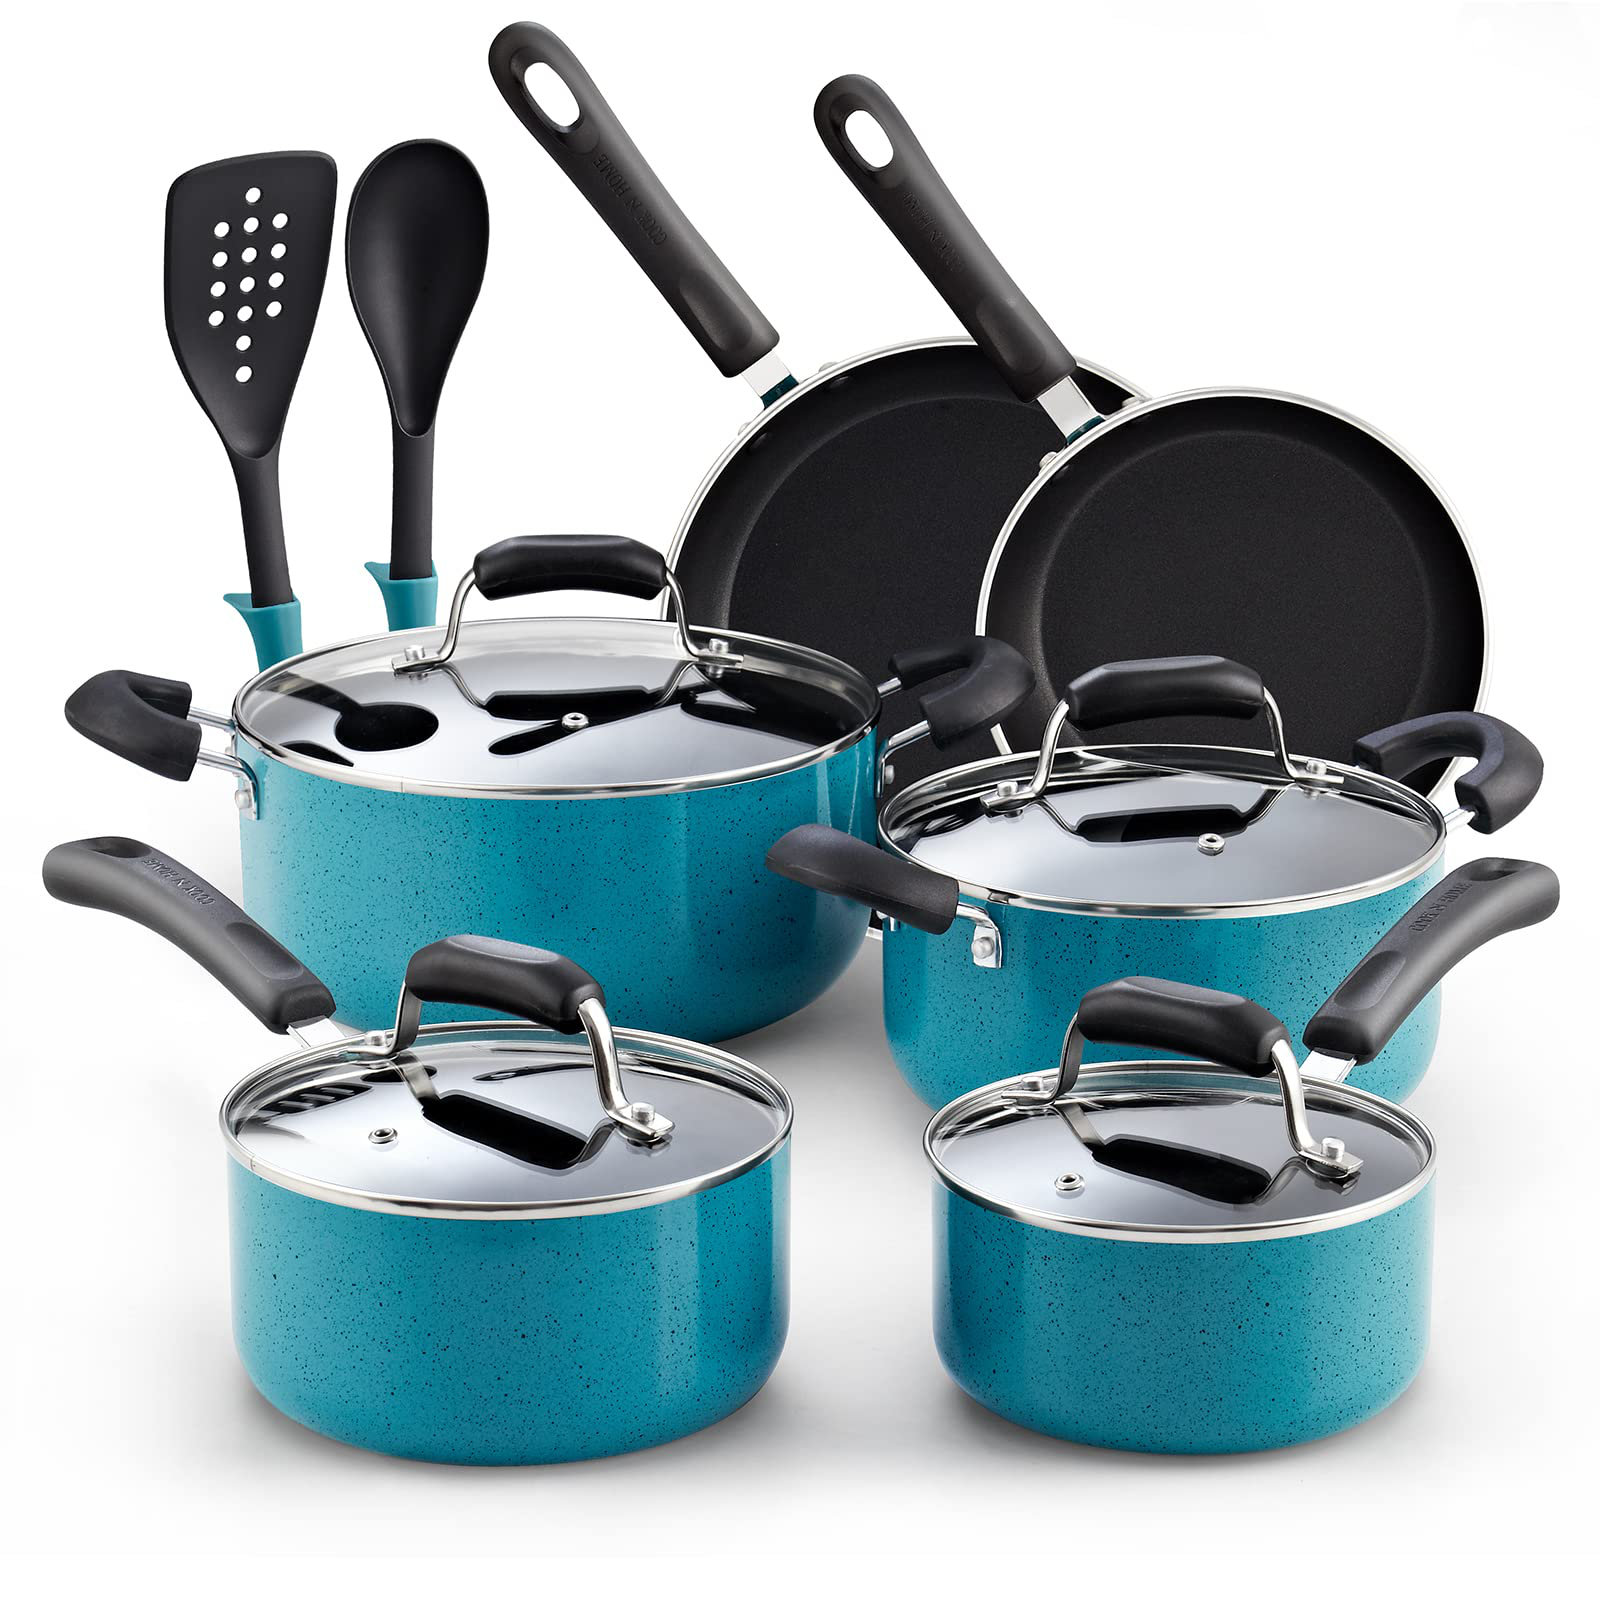 https://assets.wfcdn.com/im/90169809/compr-r85/2533/253306459/12-piece-non-stick-aluminum-cookware-set.jpg